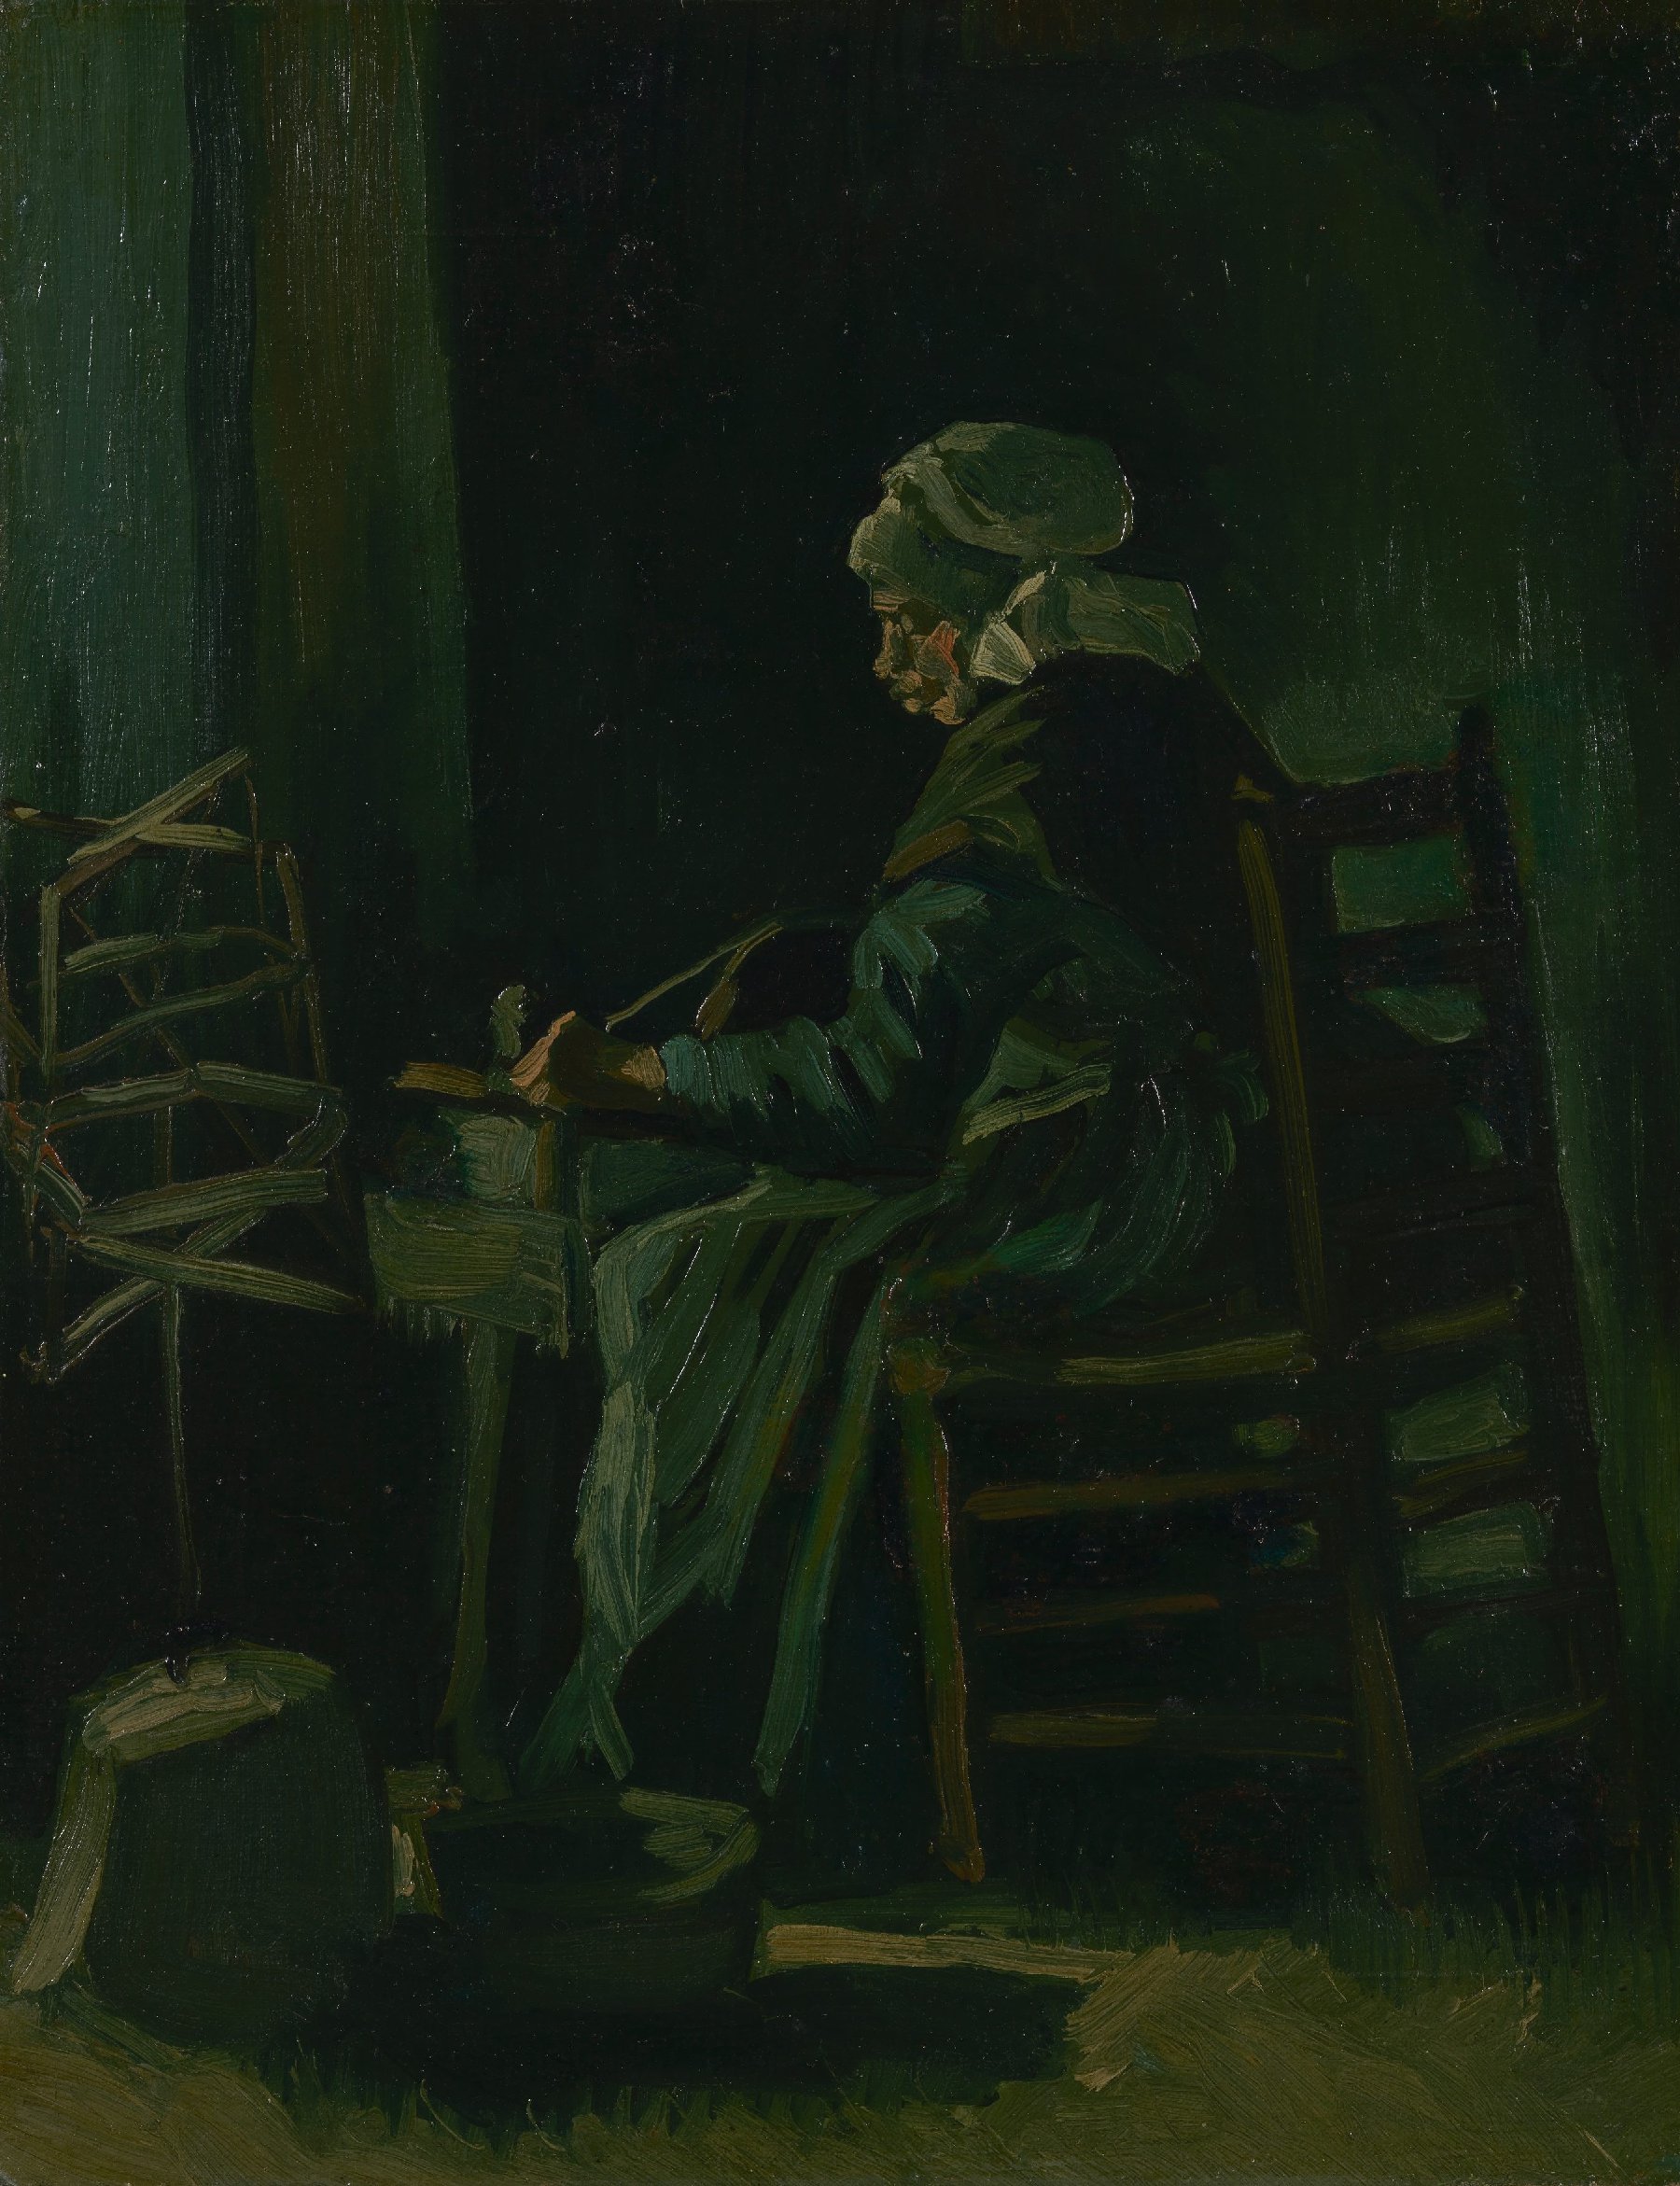 Garenspoelende vrouw Vincent van Gogh (1853 - 1890), Nuenen, maart 1885